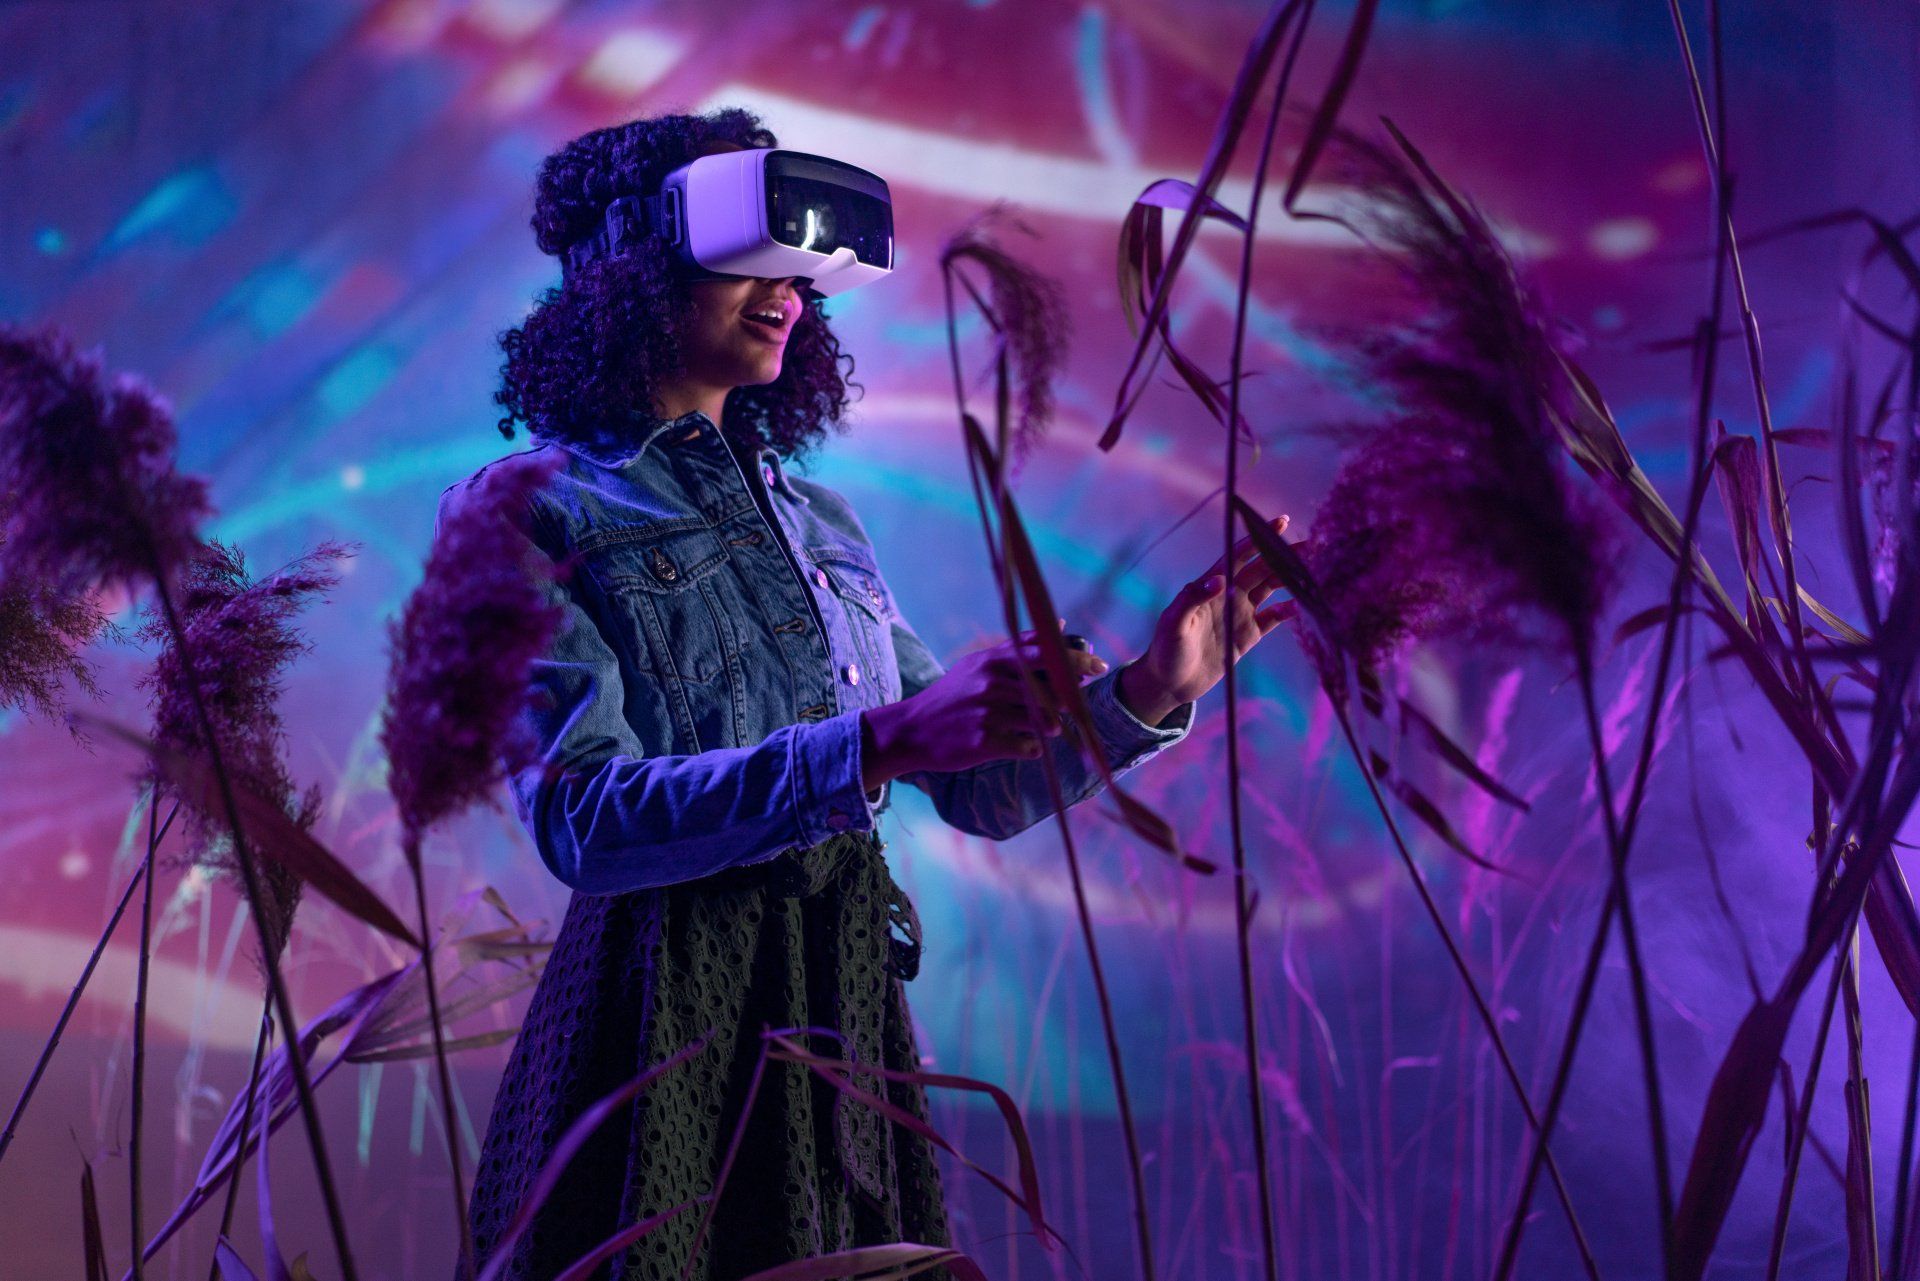 Woman in a VR headset walking through virtual tall grass